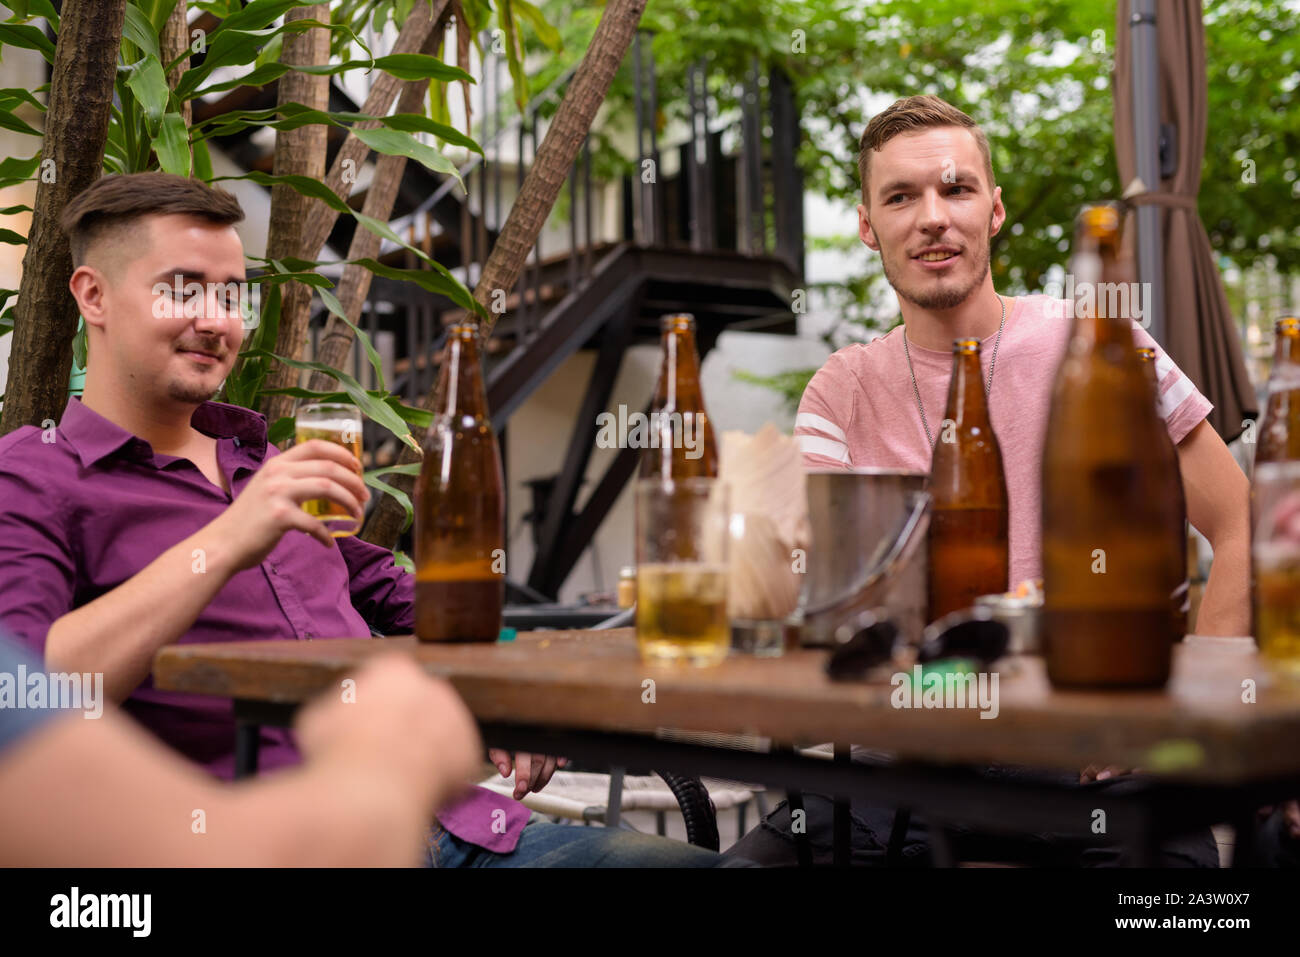 Glücklich lächelnd, während Männer trinken Bier im Freien Stockfoto